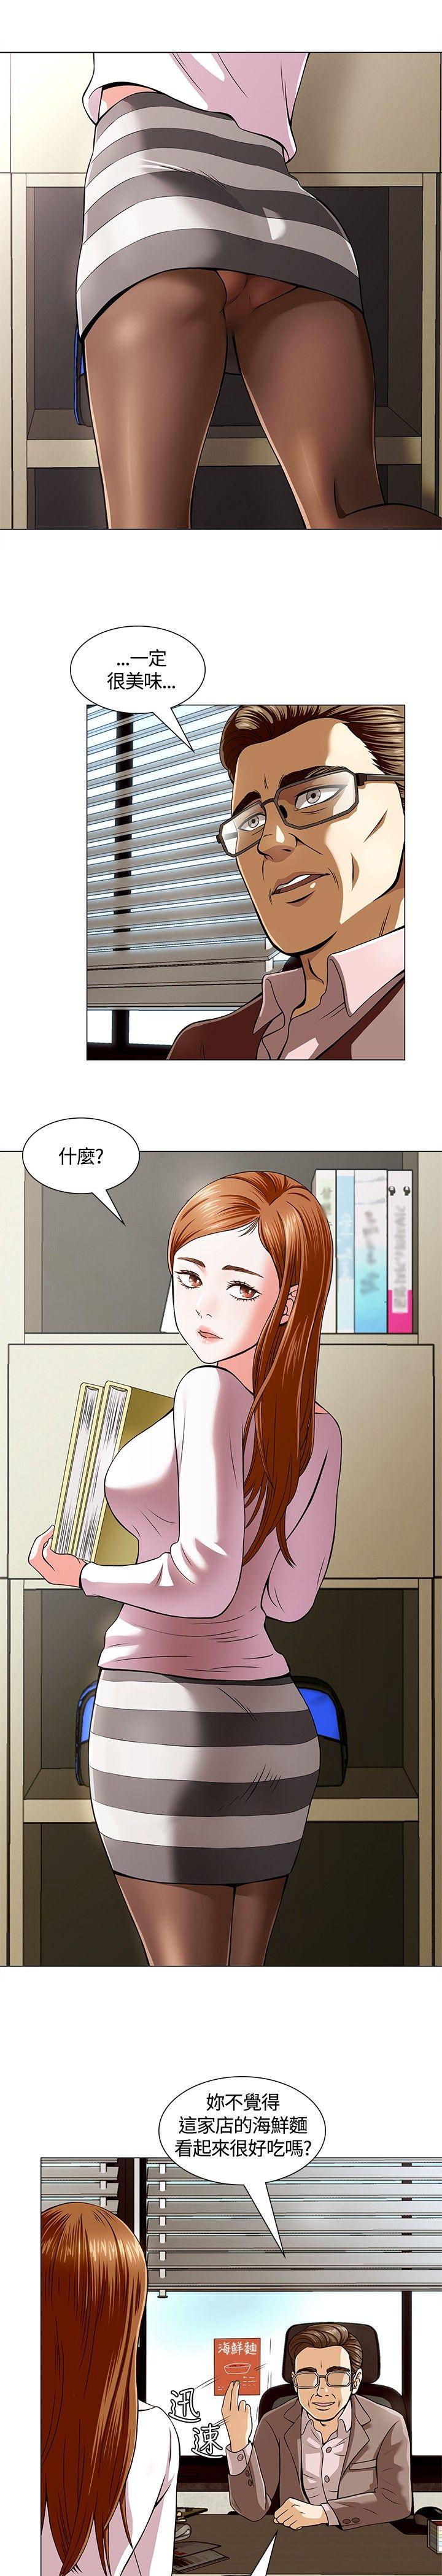 韩国污漫画 Roommate 第2话 15